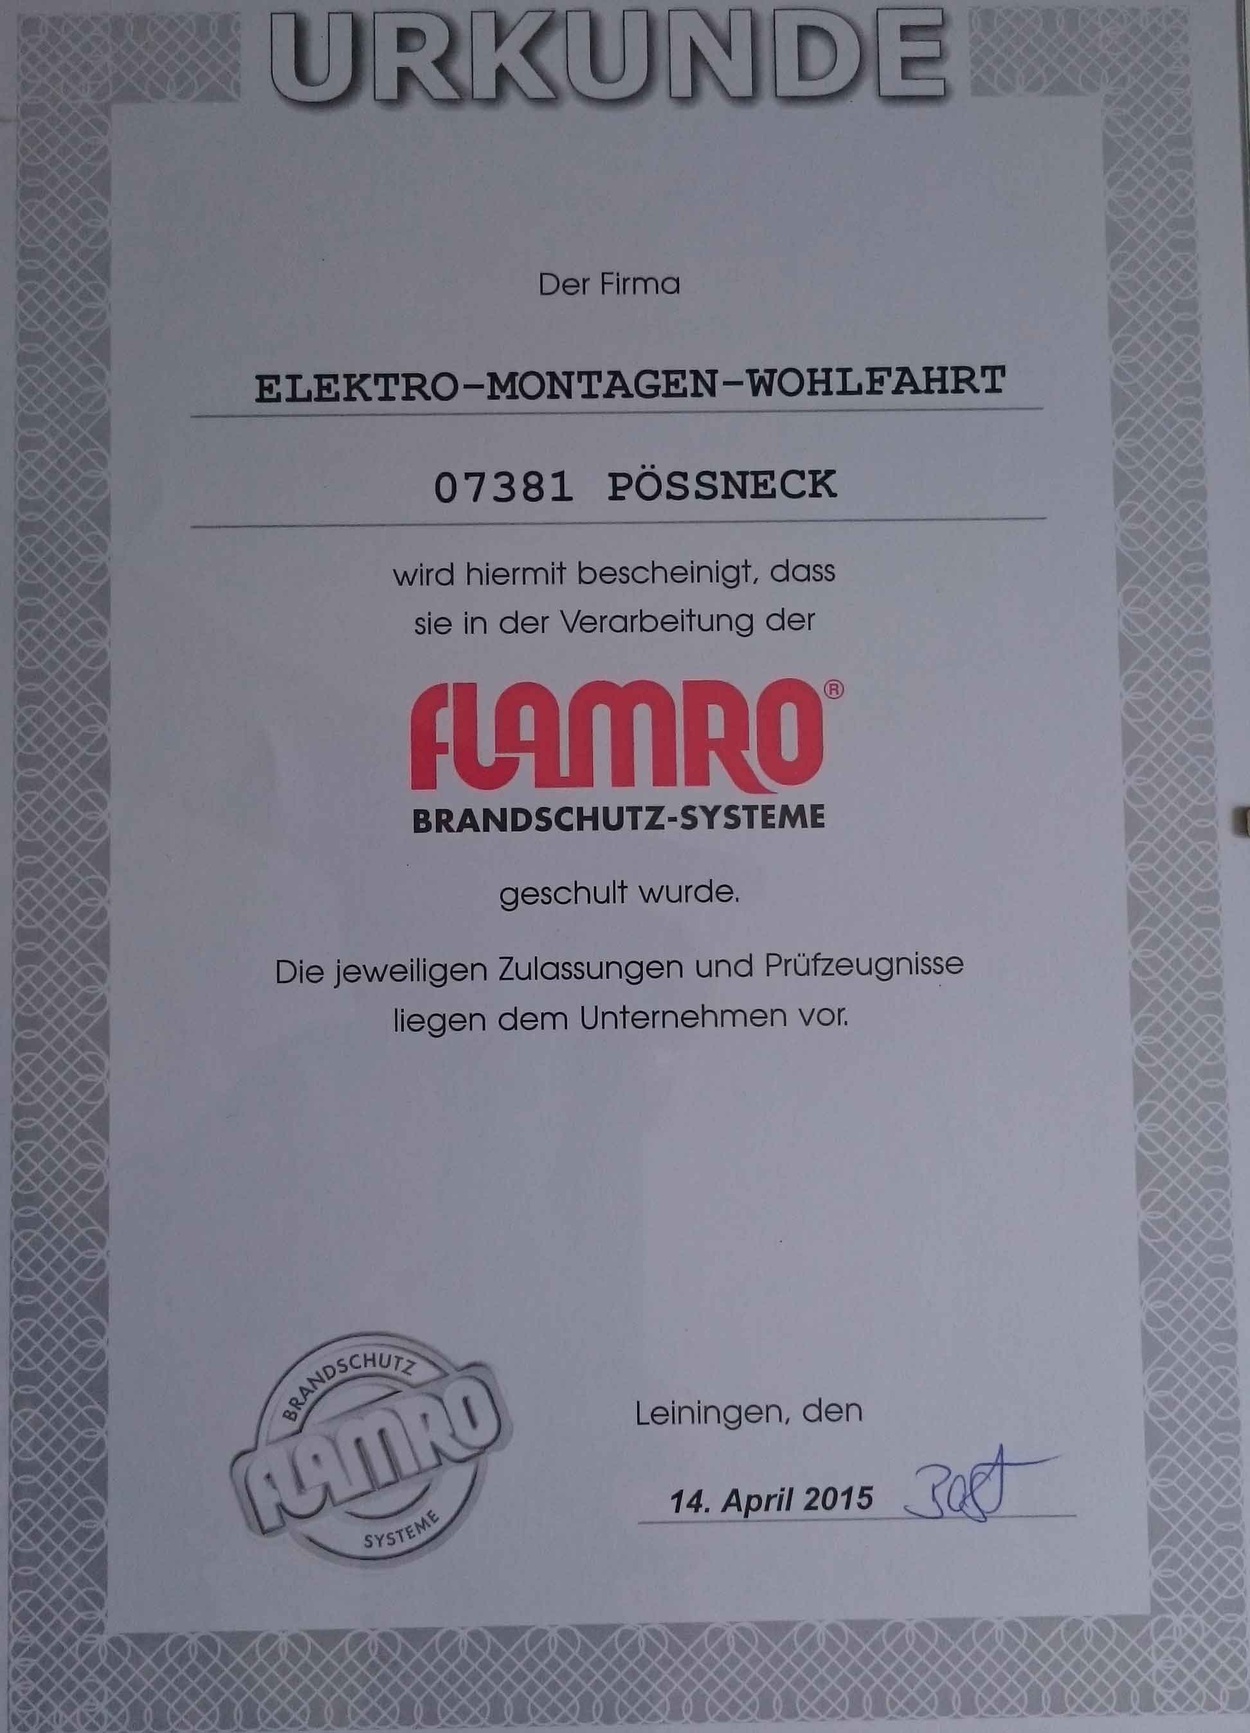 Wir sind zertifiziert bei Elektro-Montagen-Wohlfahrt in Pößneck